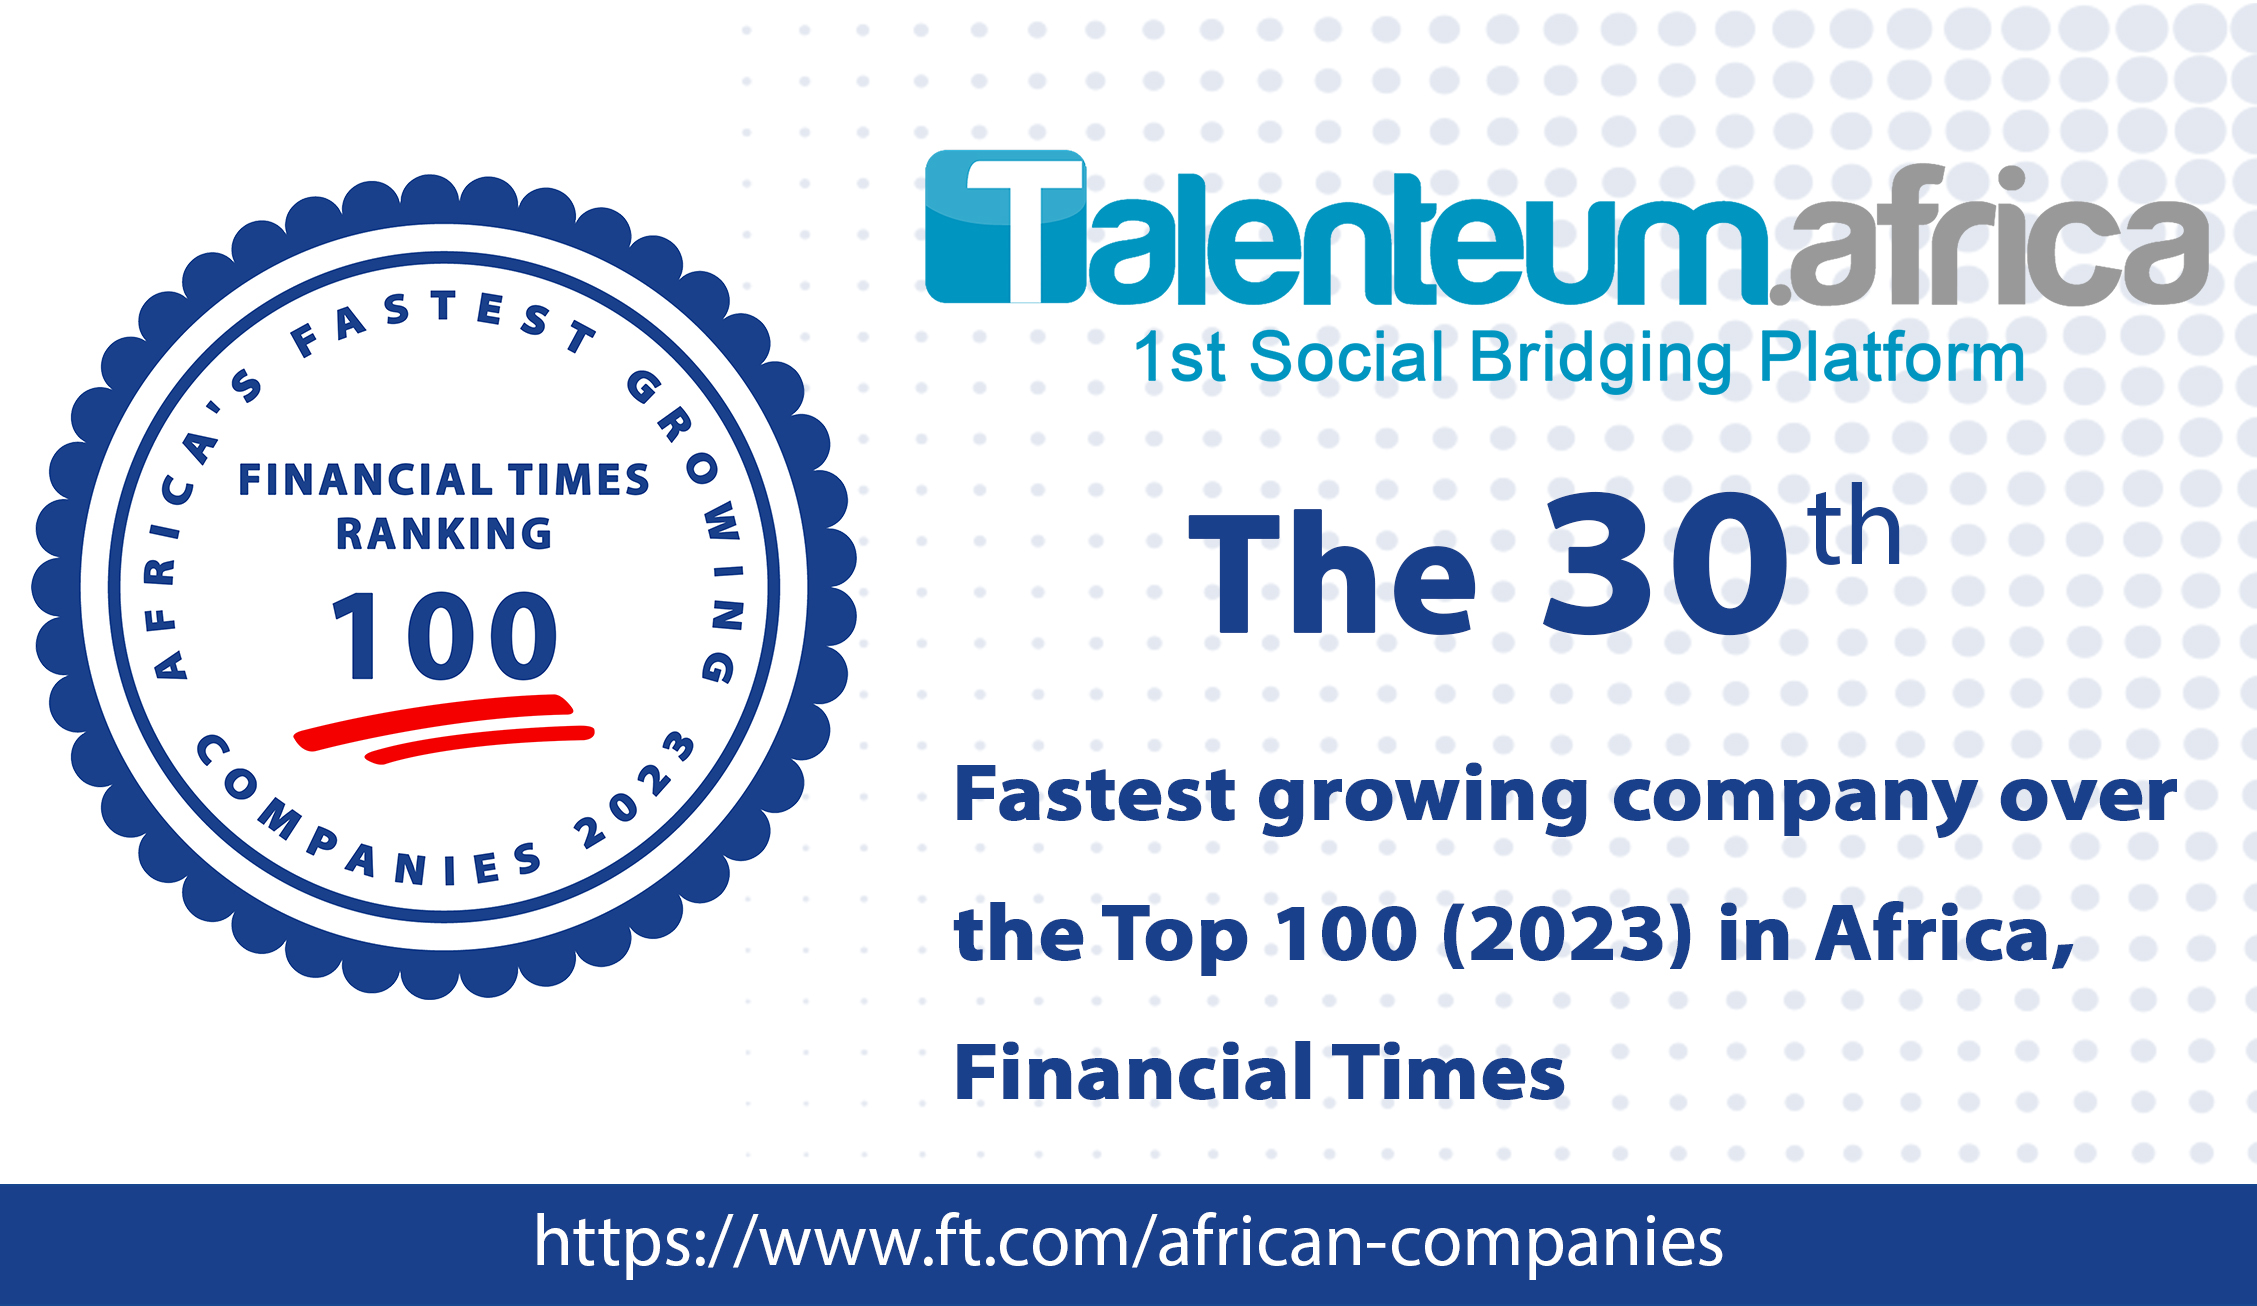 Talenteum Africa, la 1ère plateforme de social bridging a été classée parmi les 100 entreprises les plus rapides d’Afrique en 2023 par le Financial Times.